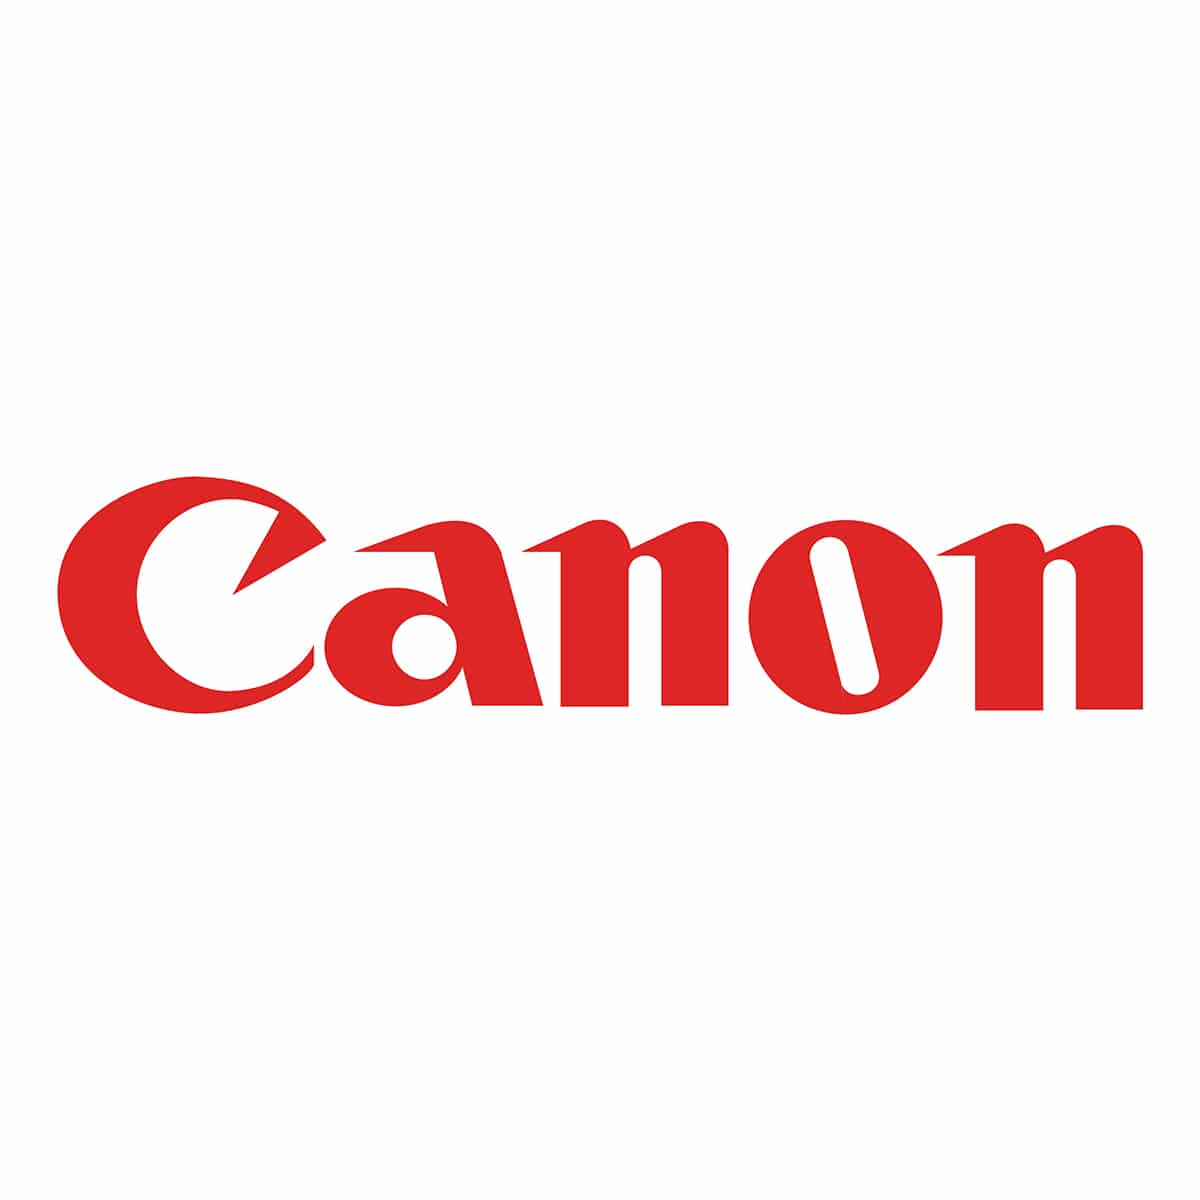 Canon_Sq